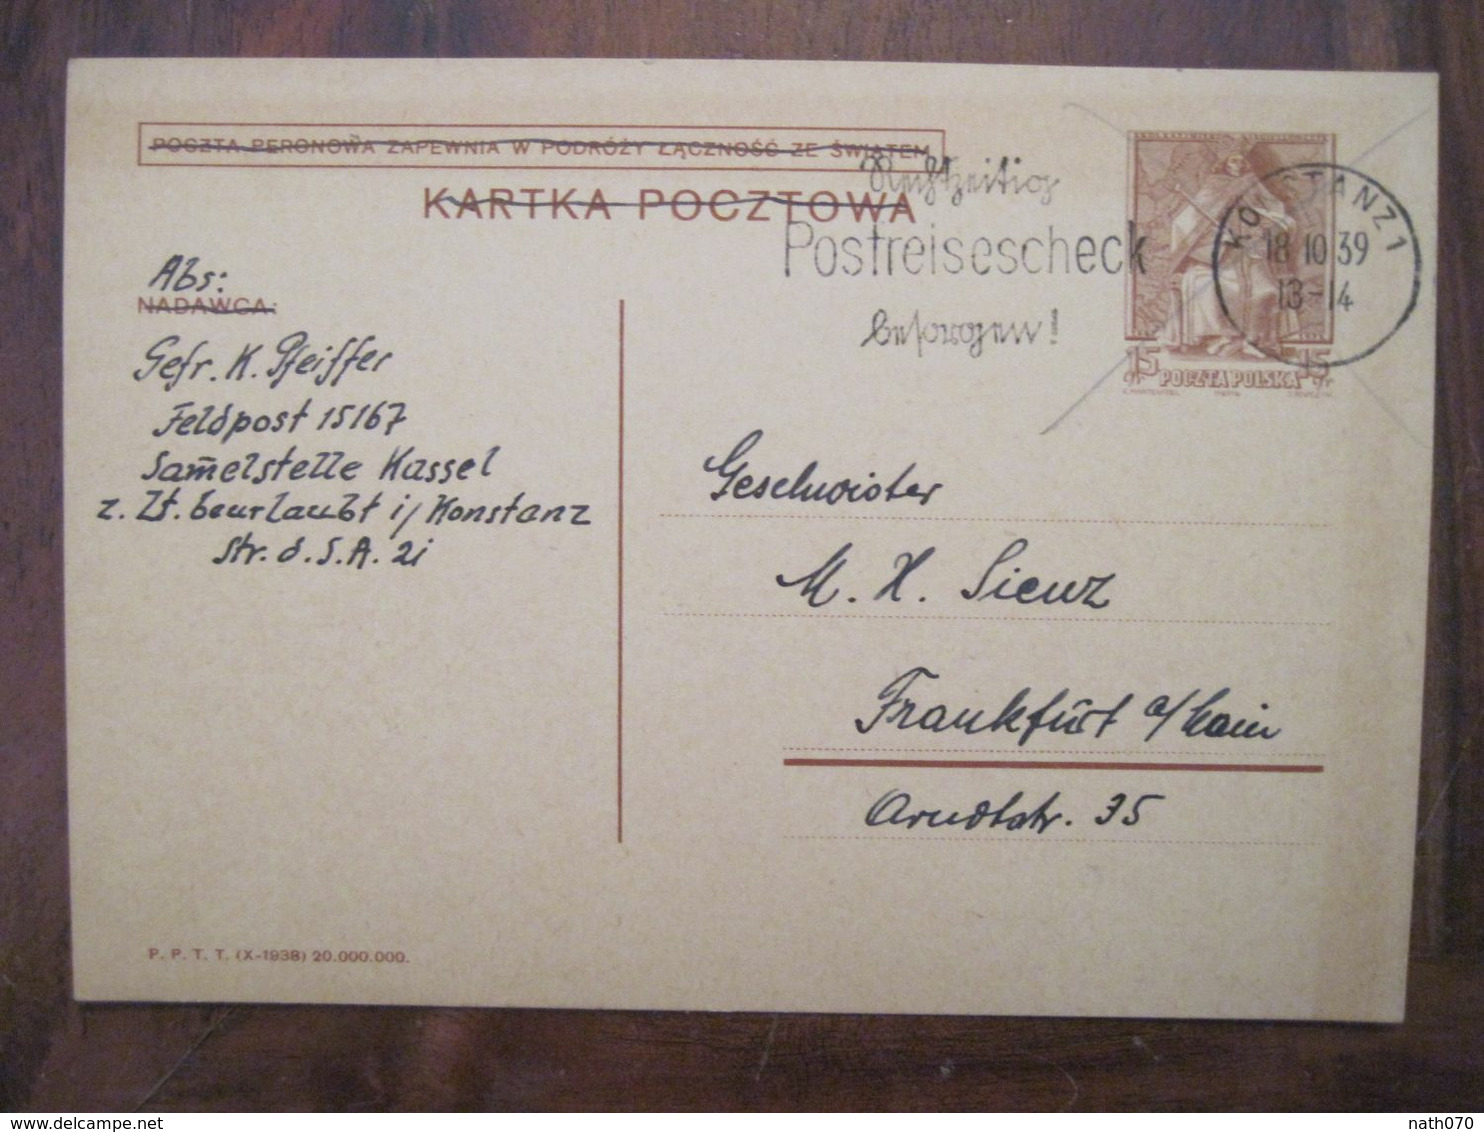 Pologne 1939 Feldpost 2 WK Reich Feldpostnummer 15167 Landesschutzen Allemagne Dt Poland Gebiete Postreisescheck - Occupation 1938-45